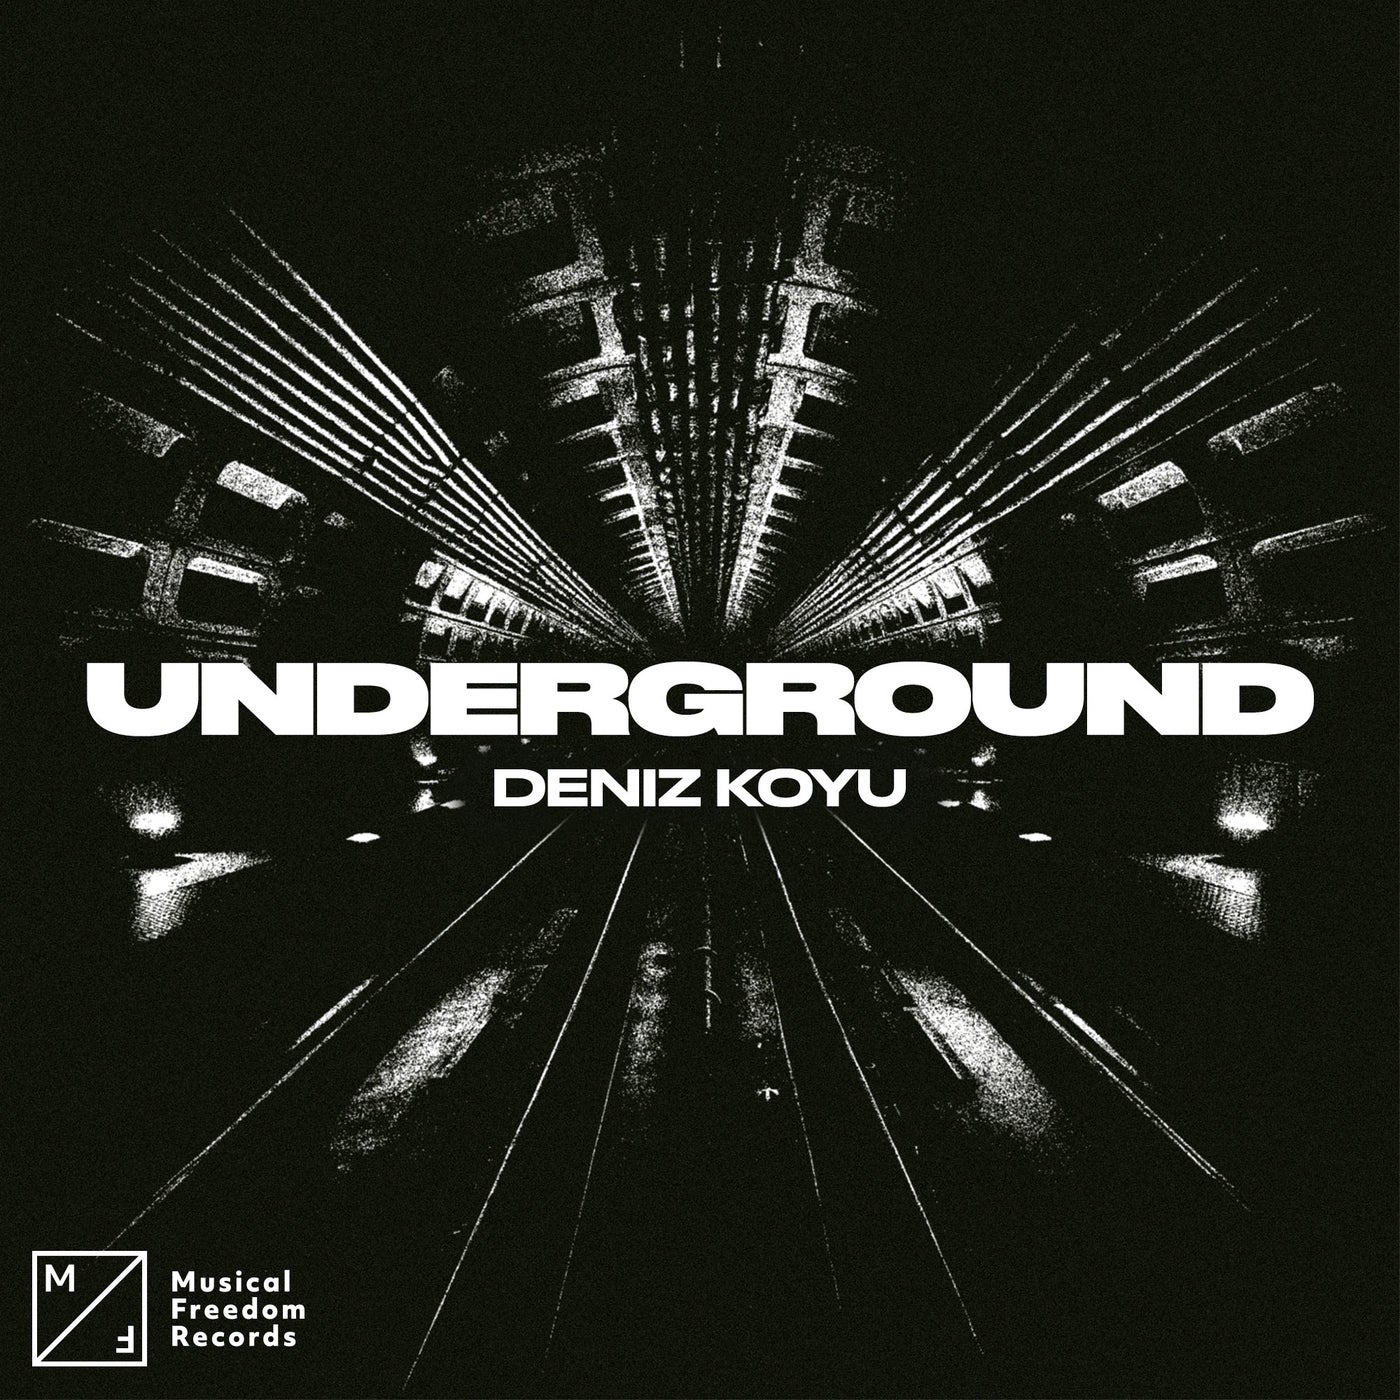 image cover: Deniz Koyu - Underground (Extended Mix) on Musical Freedom